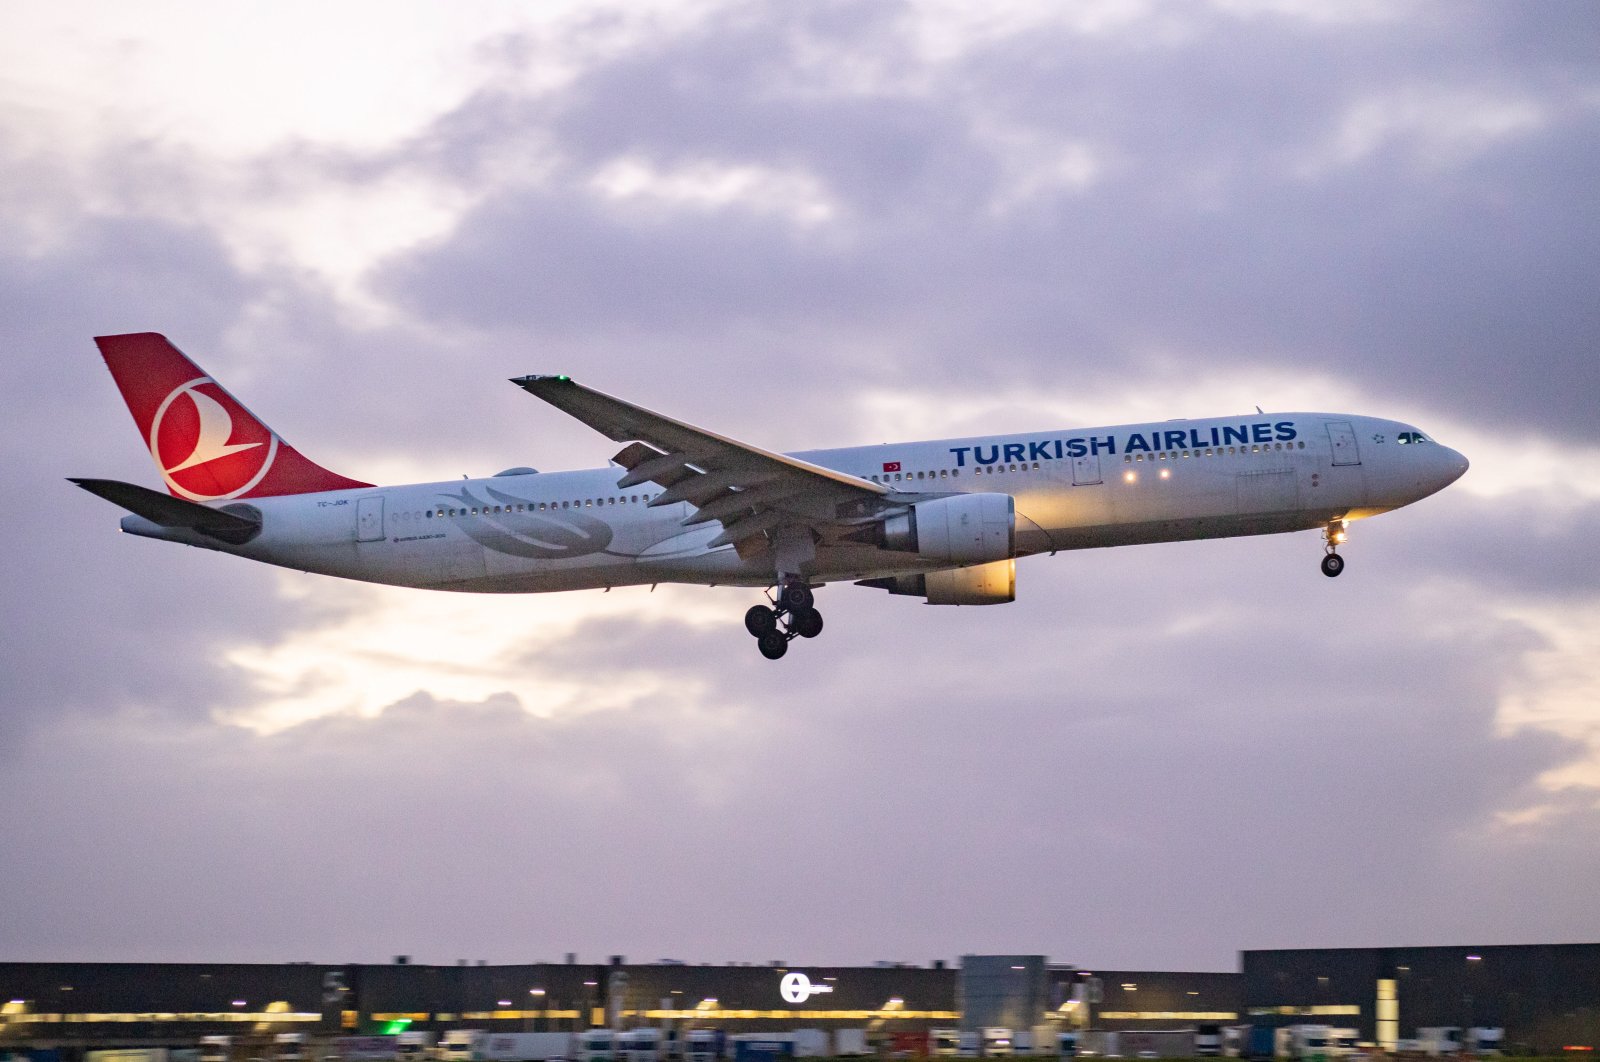 Laba bersih Turkish Airlines melonjak karena rebound perjalanan, kargo apung